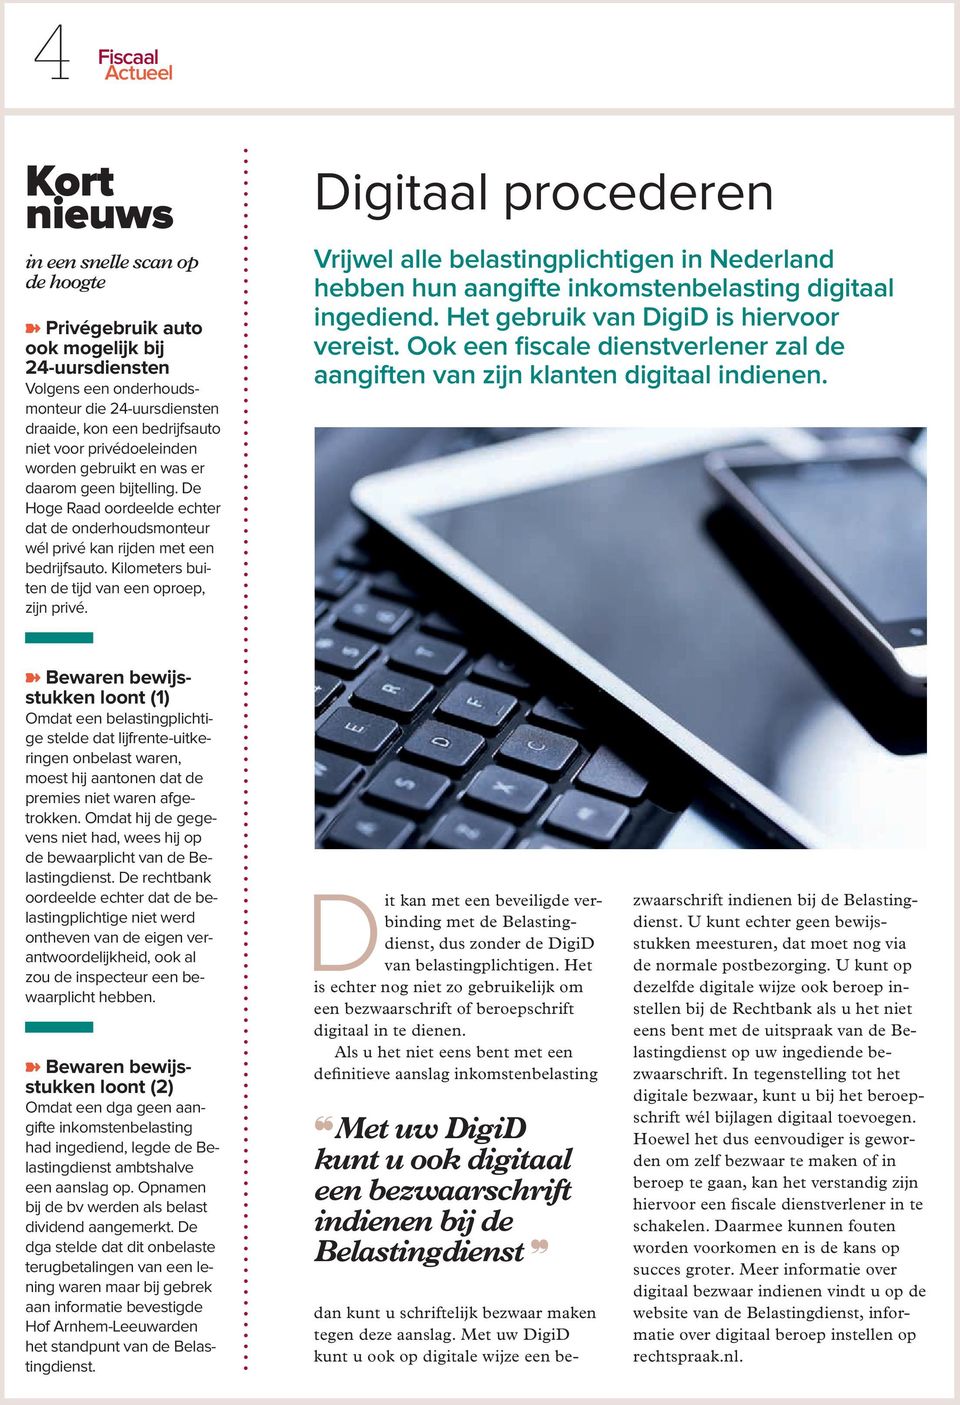 Kilometers buiten de tijd van een oproep, zijn privé. Digitaal procederen Vrijwel alle belastingplichtigen in Nederland hebben hun aangifte inkomstenbelasting digitaal ingediend.